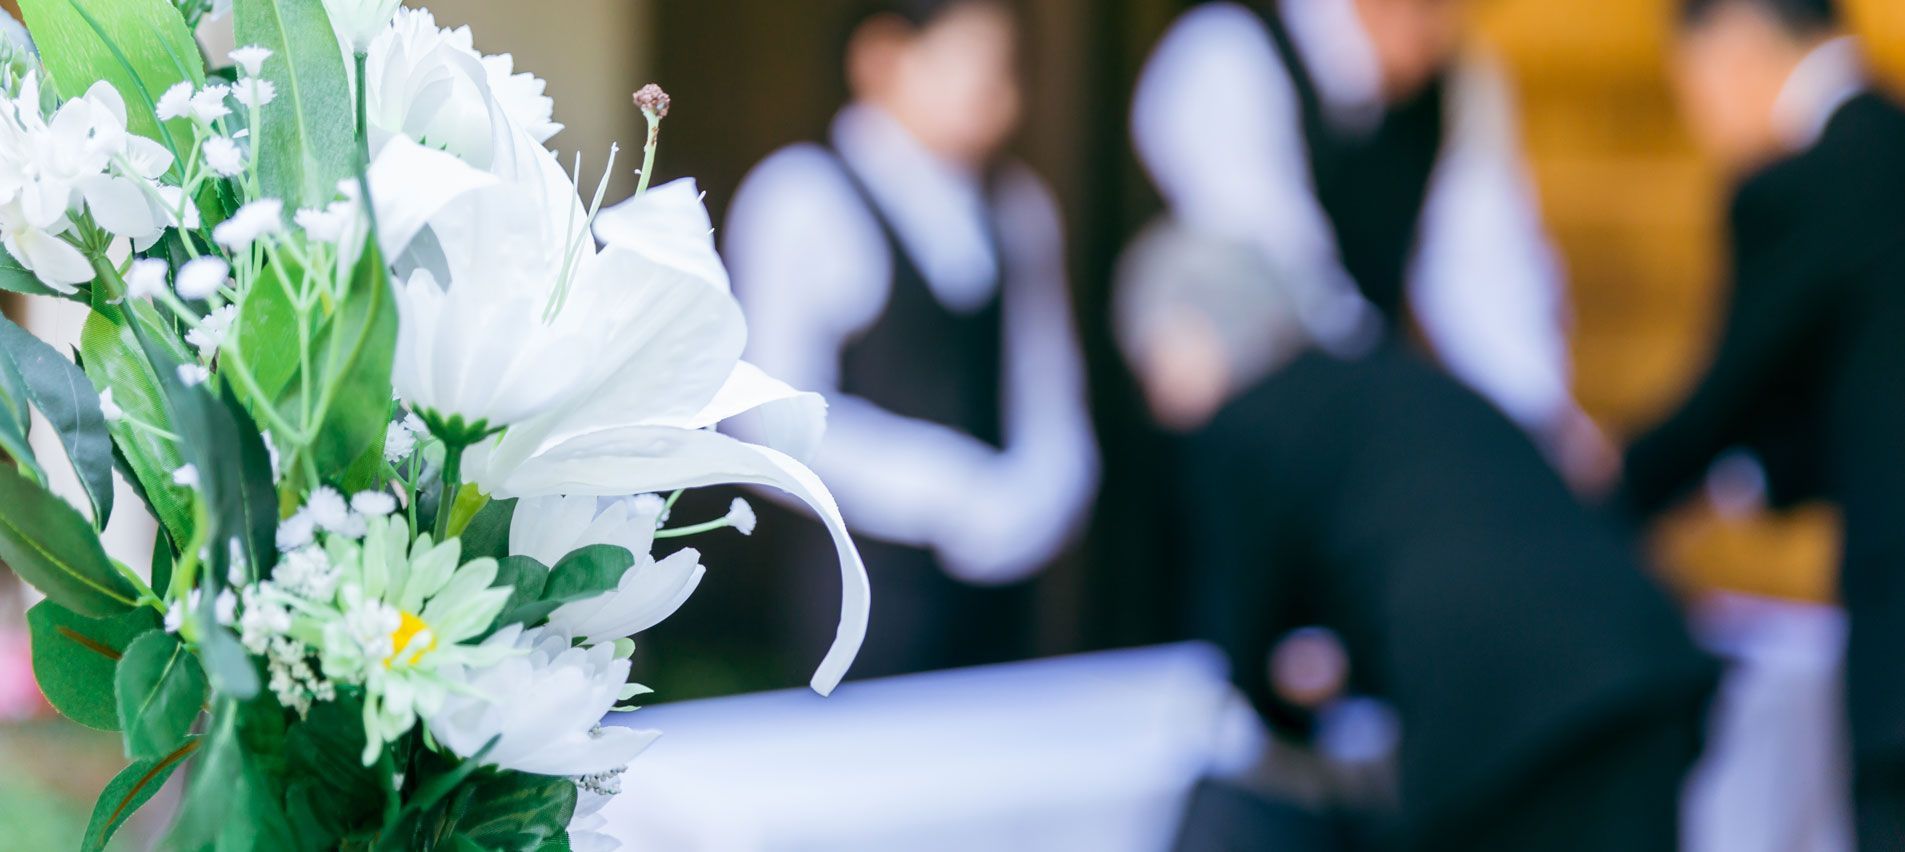 Fleurs avec une cérémonies funéraire en arriere-plan